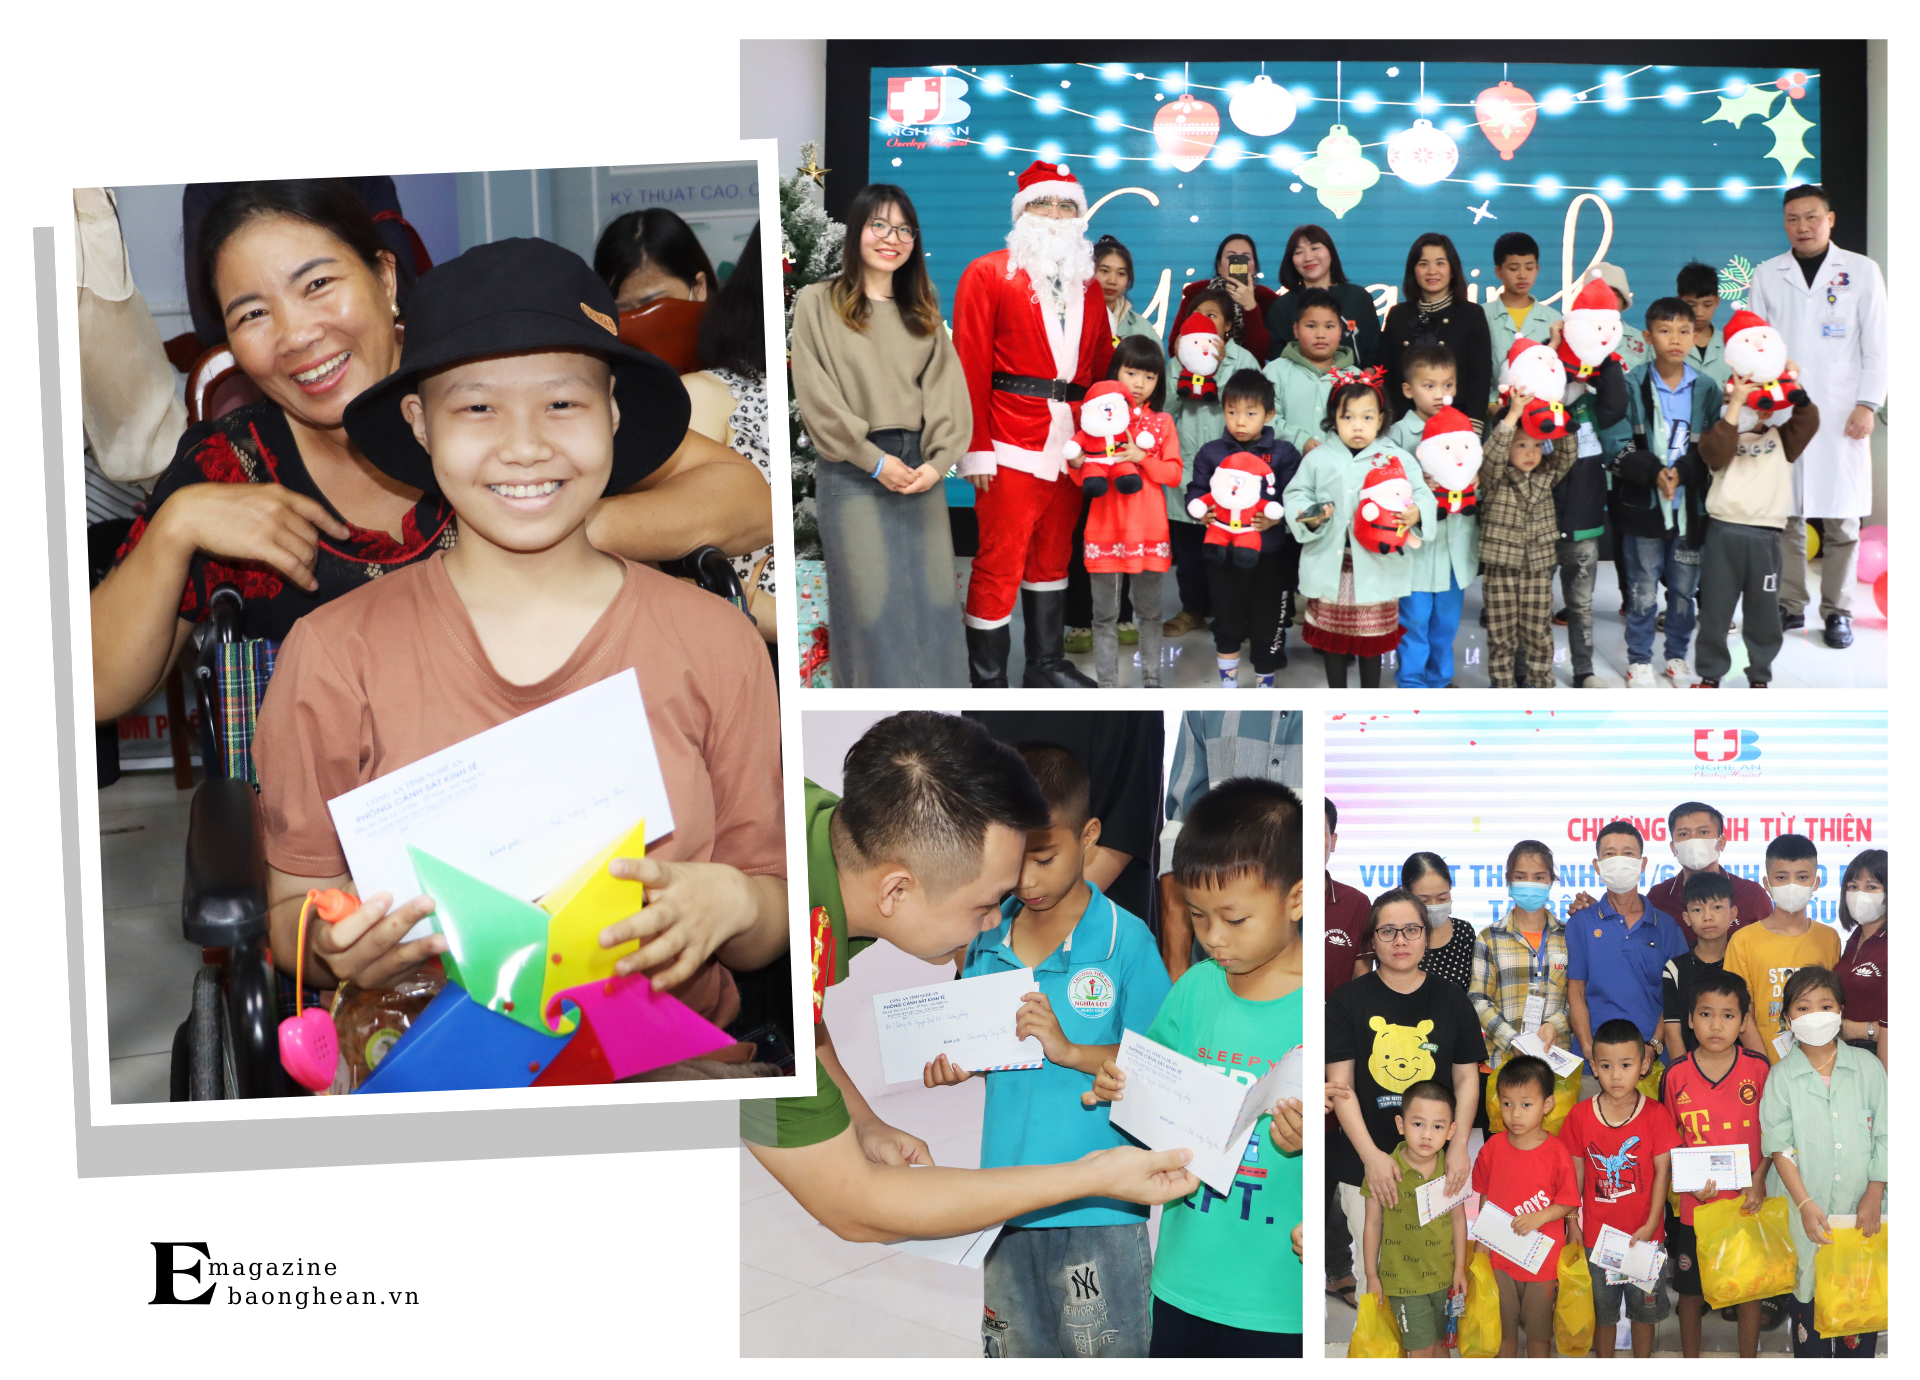 Hàng năm, vào các dịp lễ như Giáng sinh, Trung thu, Tết Thiếu nhi..., bệnh viện tổ chức nhiều chương trình dành cho trẻ em.